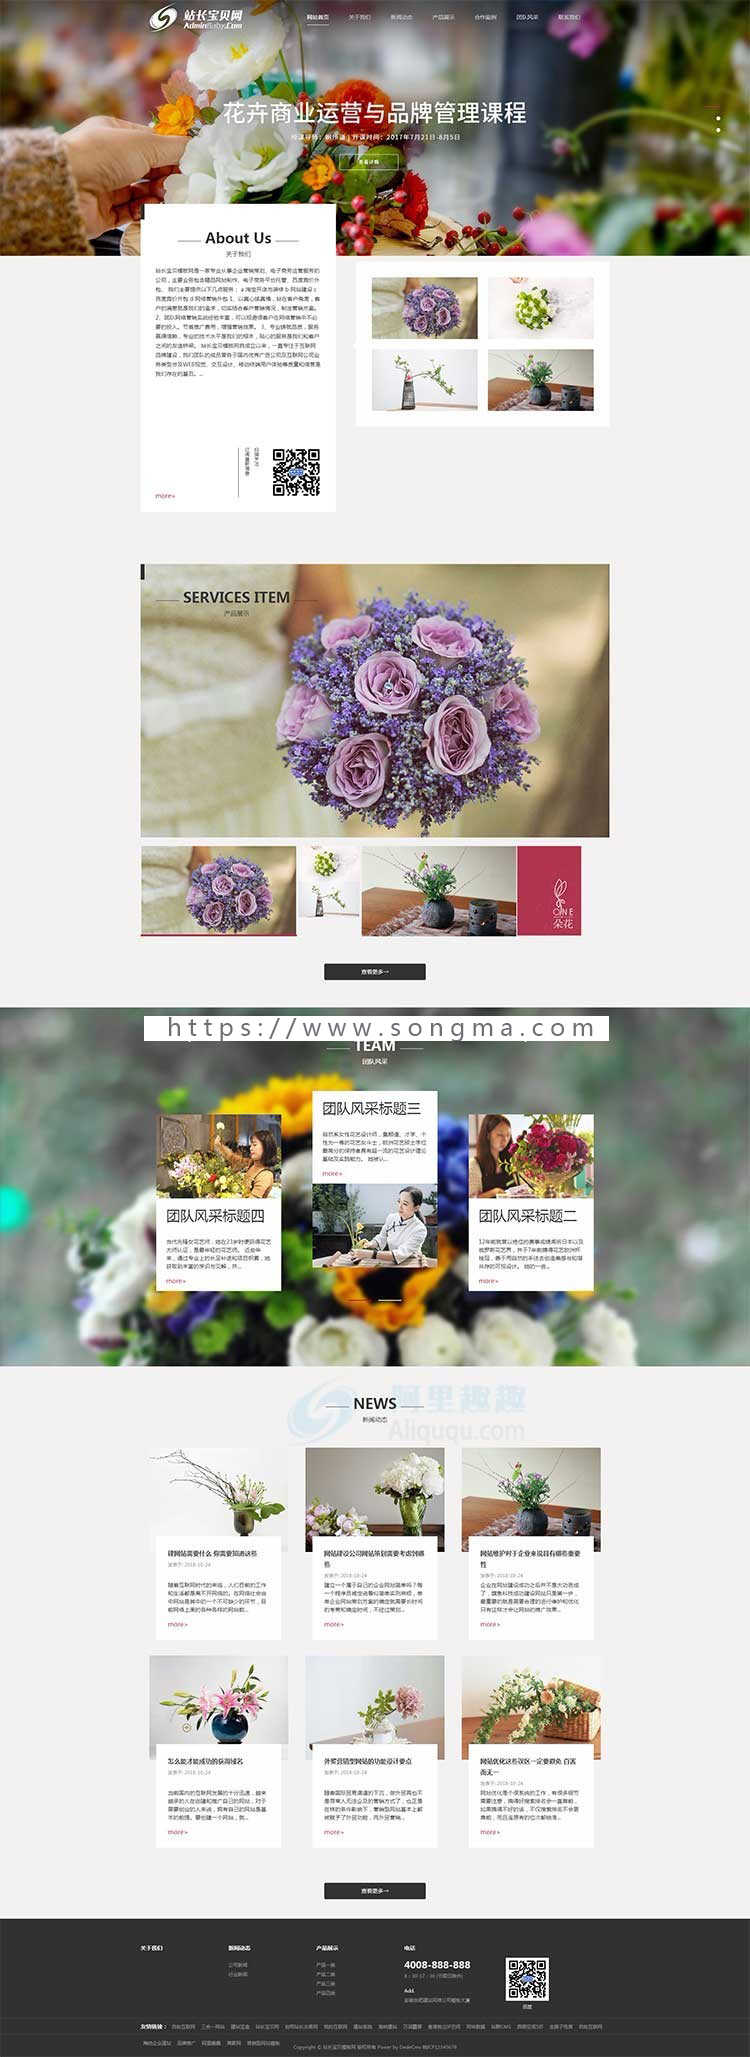 鲜花网站模板 HTML5模版花卉礼品公司网站源码 织梦自适应手机站